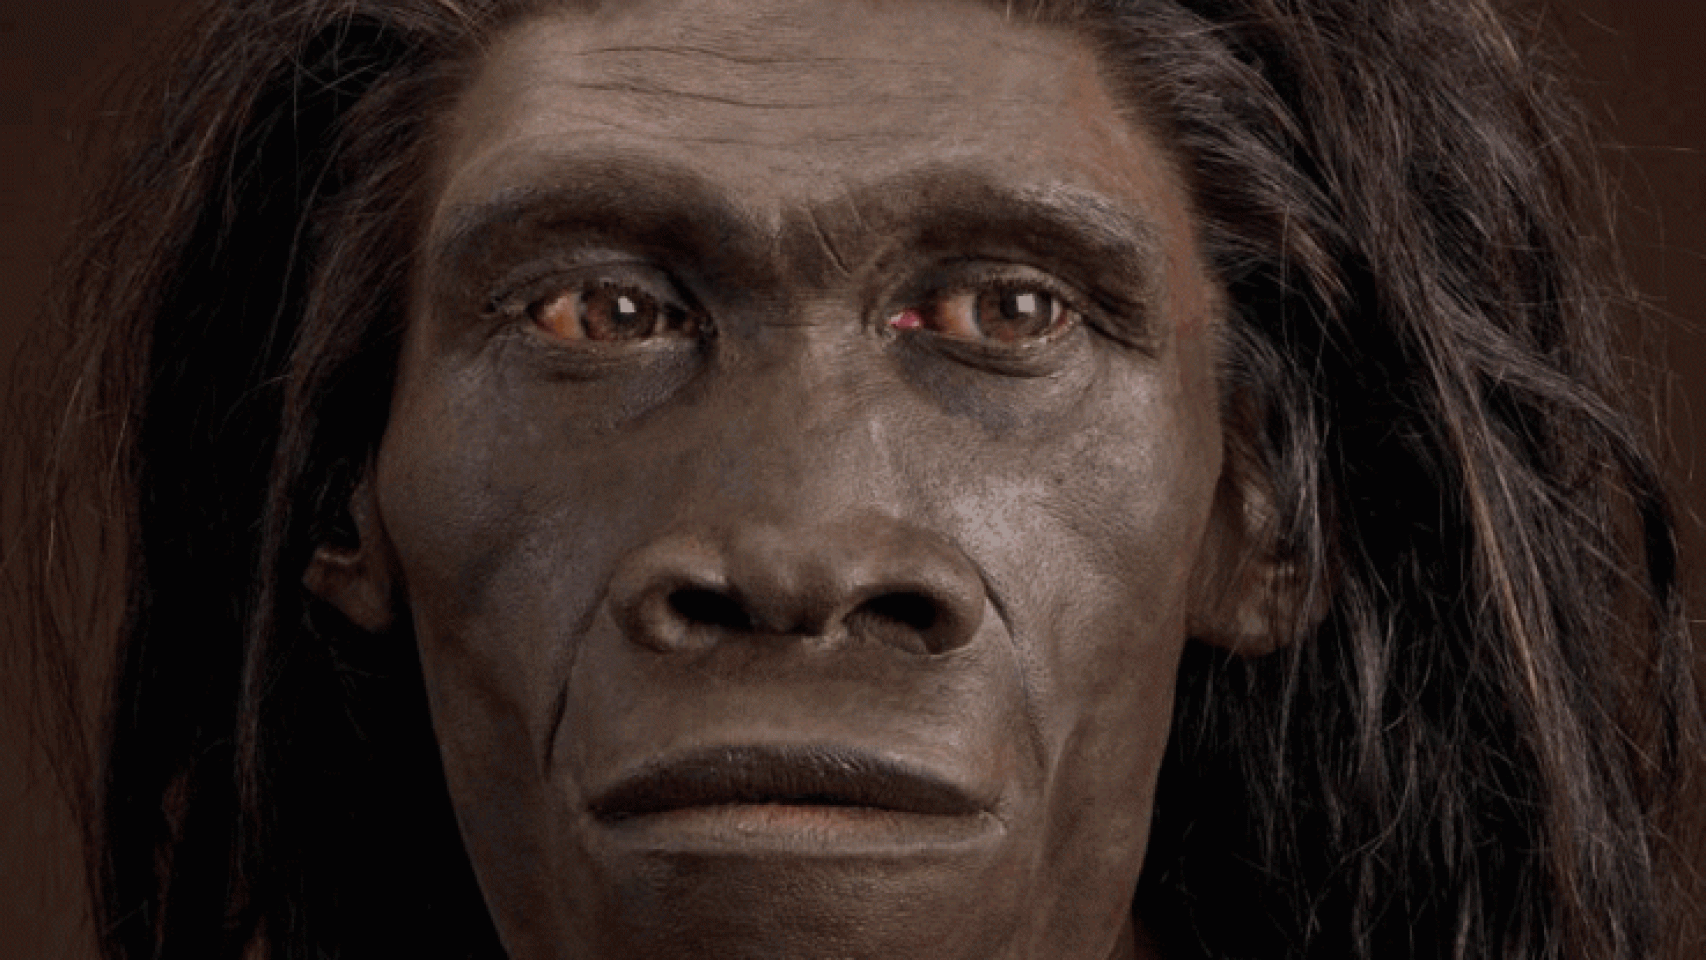 Lịch sử rung chuyển vì 150 vật lạ của vượn người 1,4 triệu tuổi - Ảnh 2.